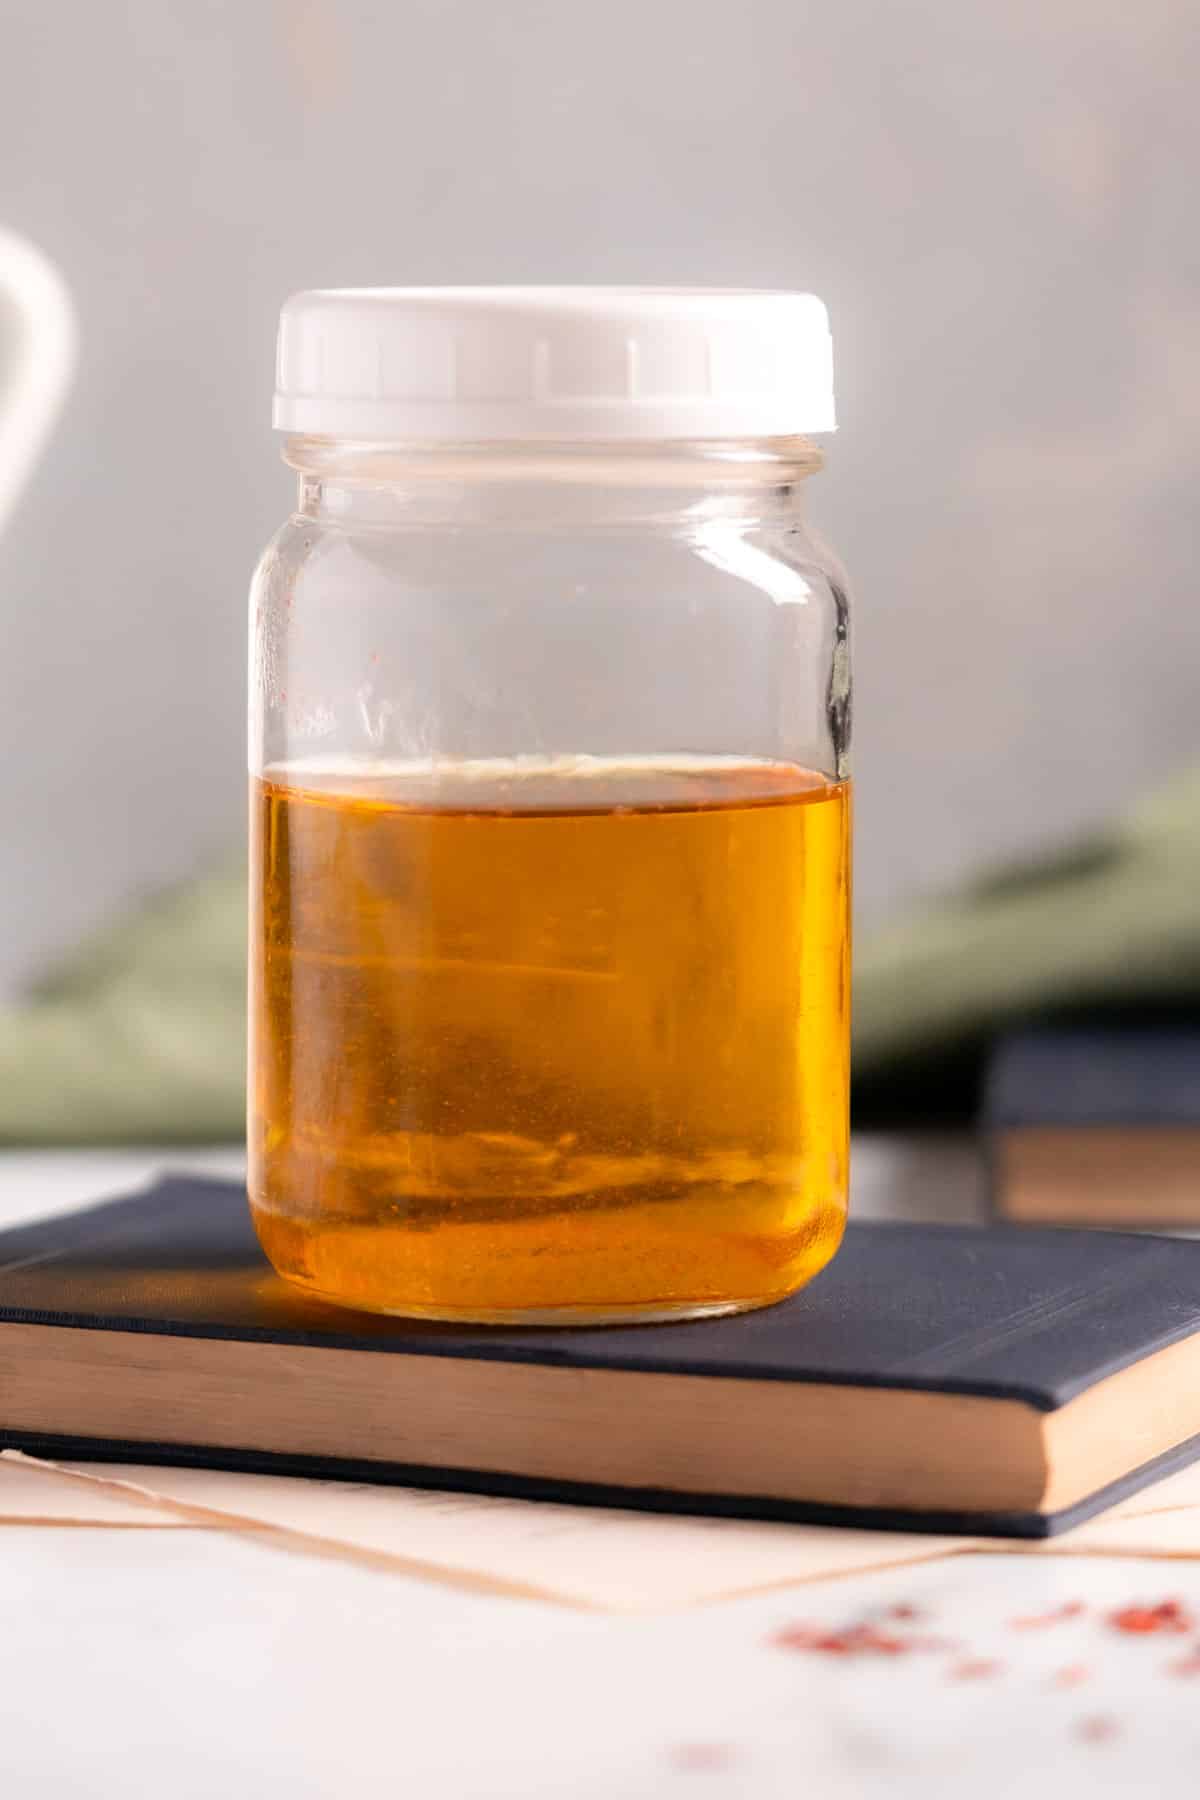 Saffron water being stored in a jar.